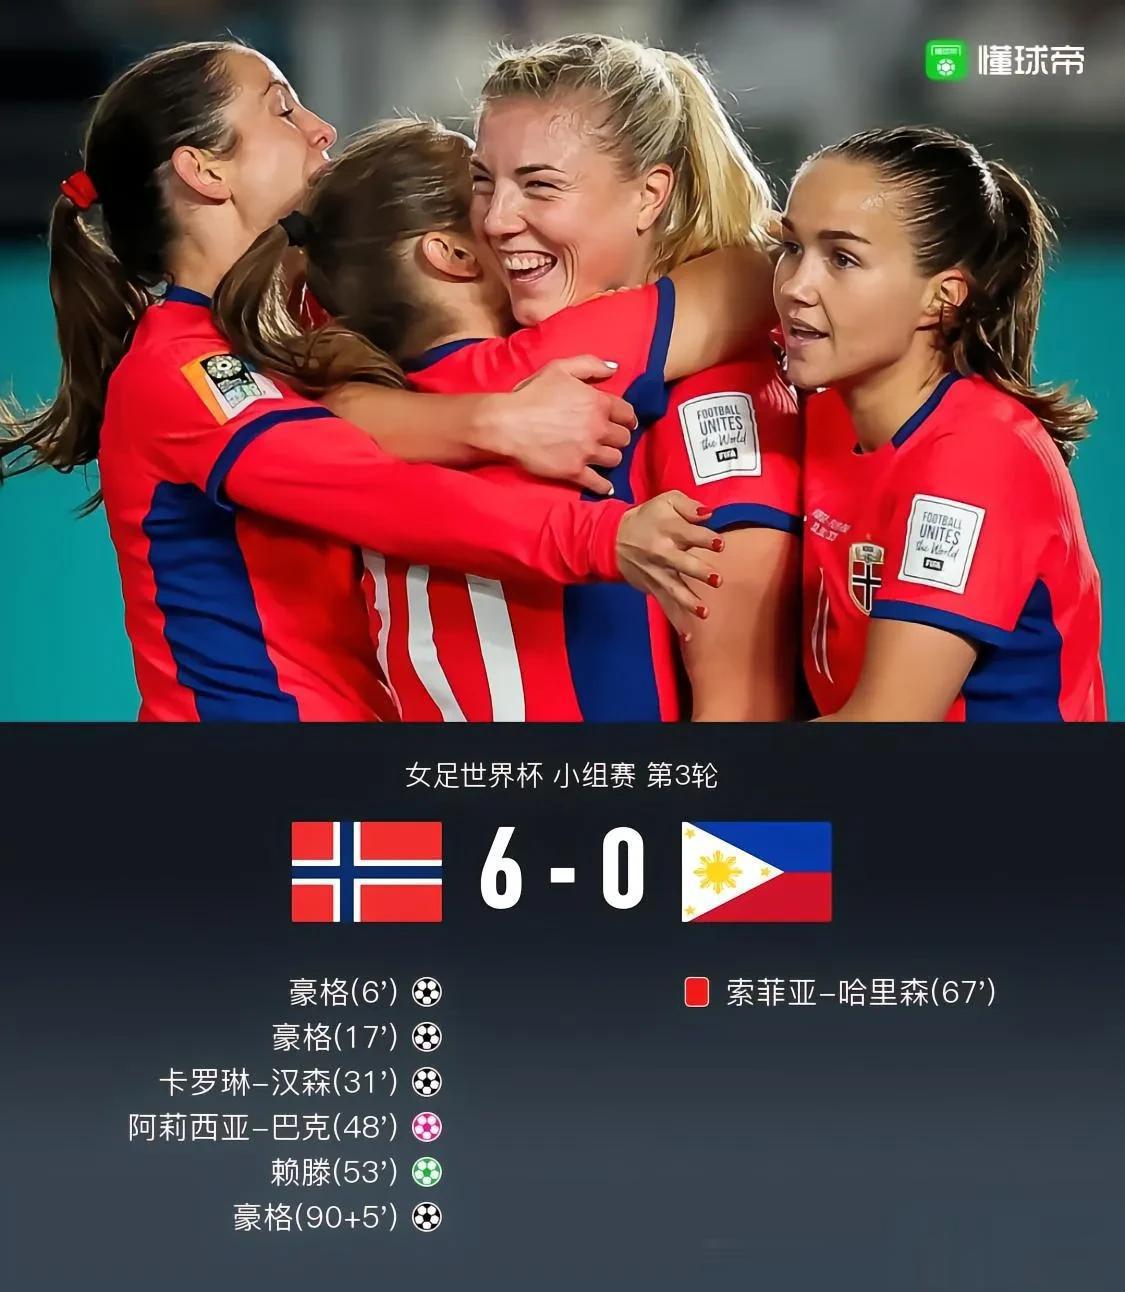 6-0，挪威女足完成自我救赎，顺利晋级淘汰赛！
2023女足世界杯A组的比赛已结(1)